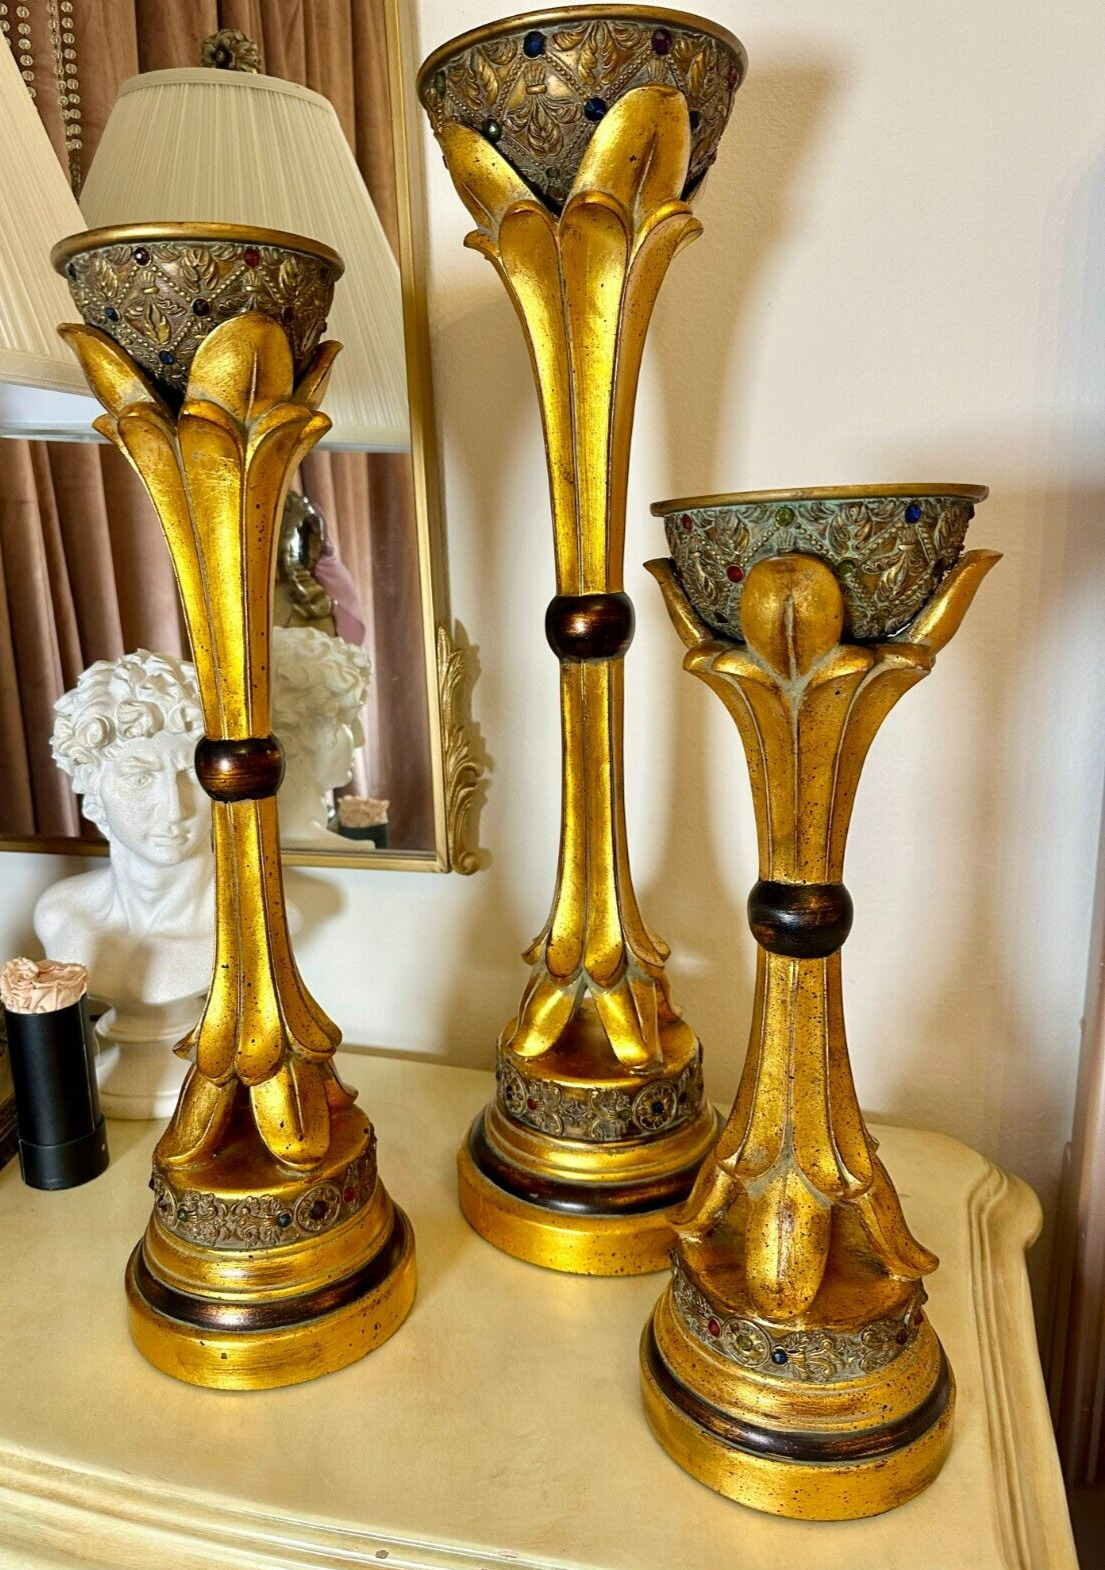 Vintage Hollywood Regency Gold Leaf Candle Holders with Colorful Gems - Set of 3